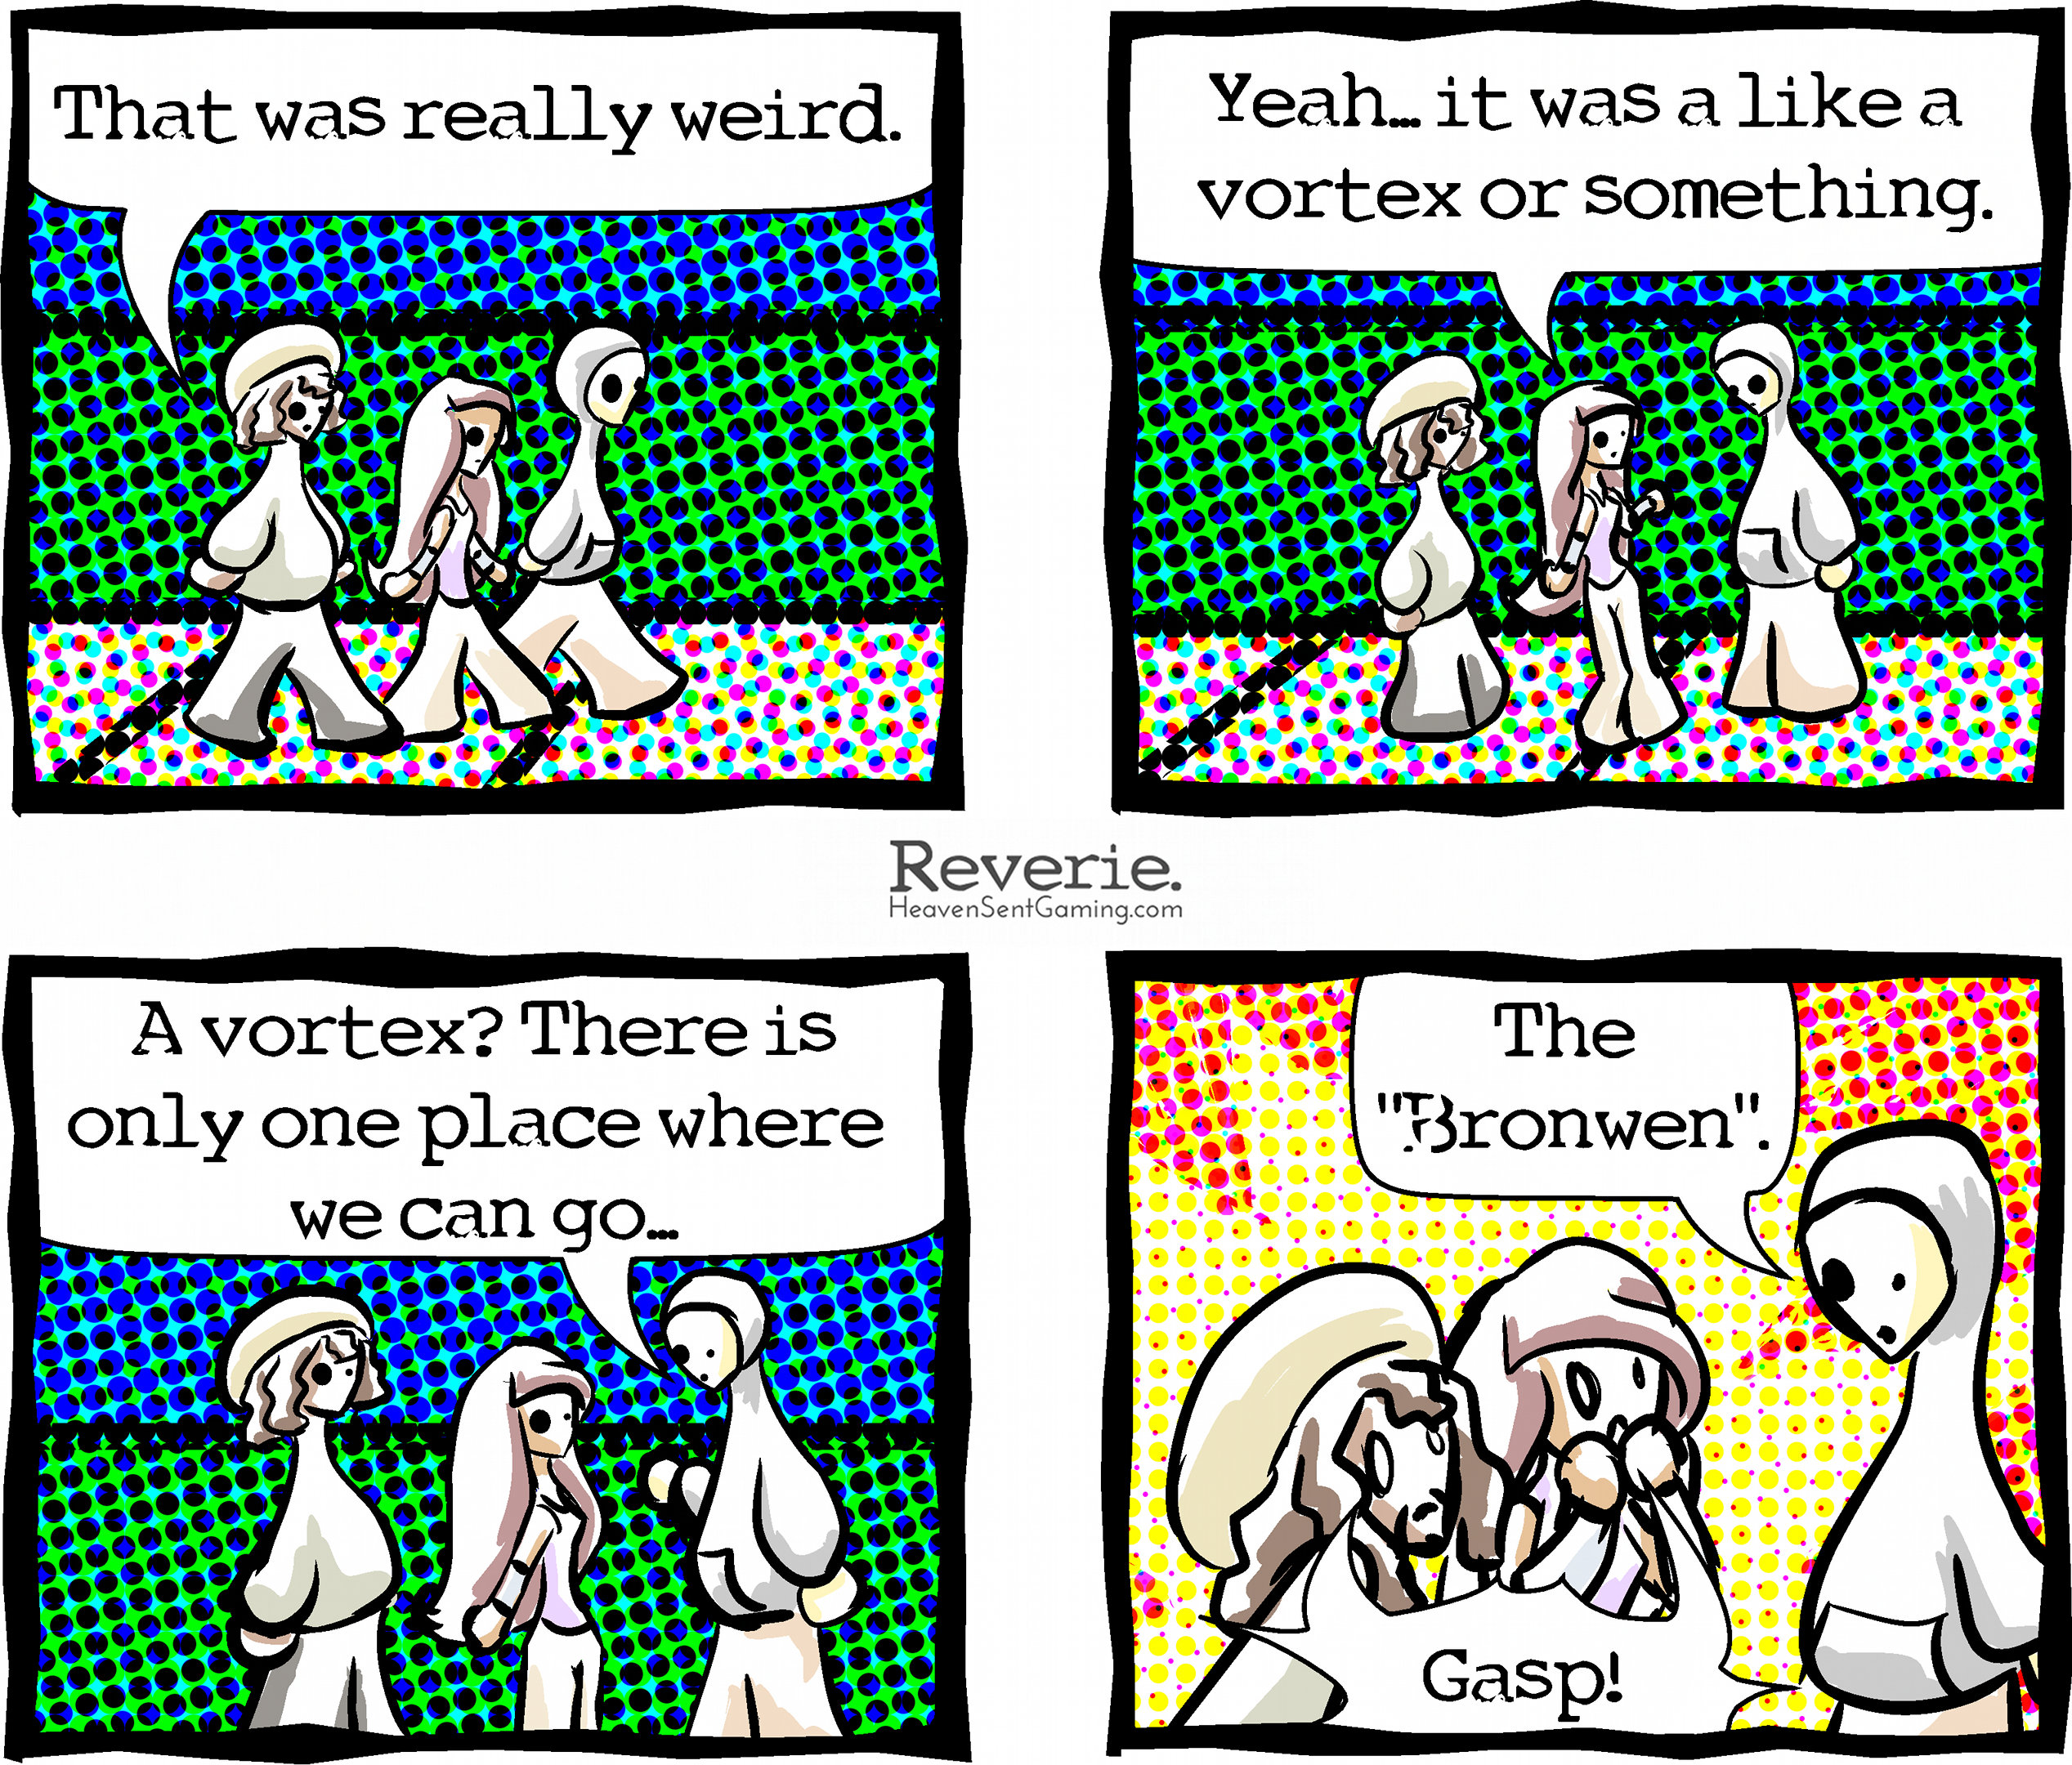 Reverie comic | "The Bronwen" | http://reverie.heavensentgaming.com/archive/the-bronwen/